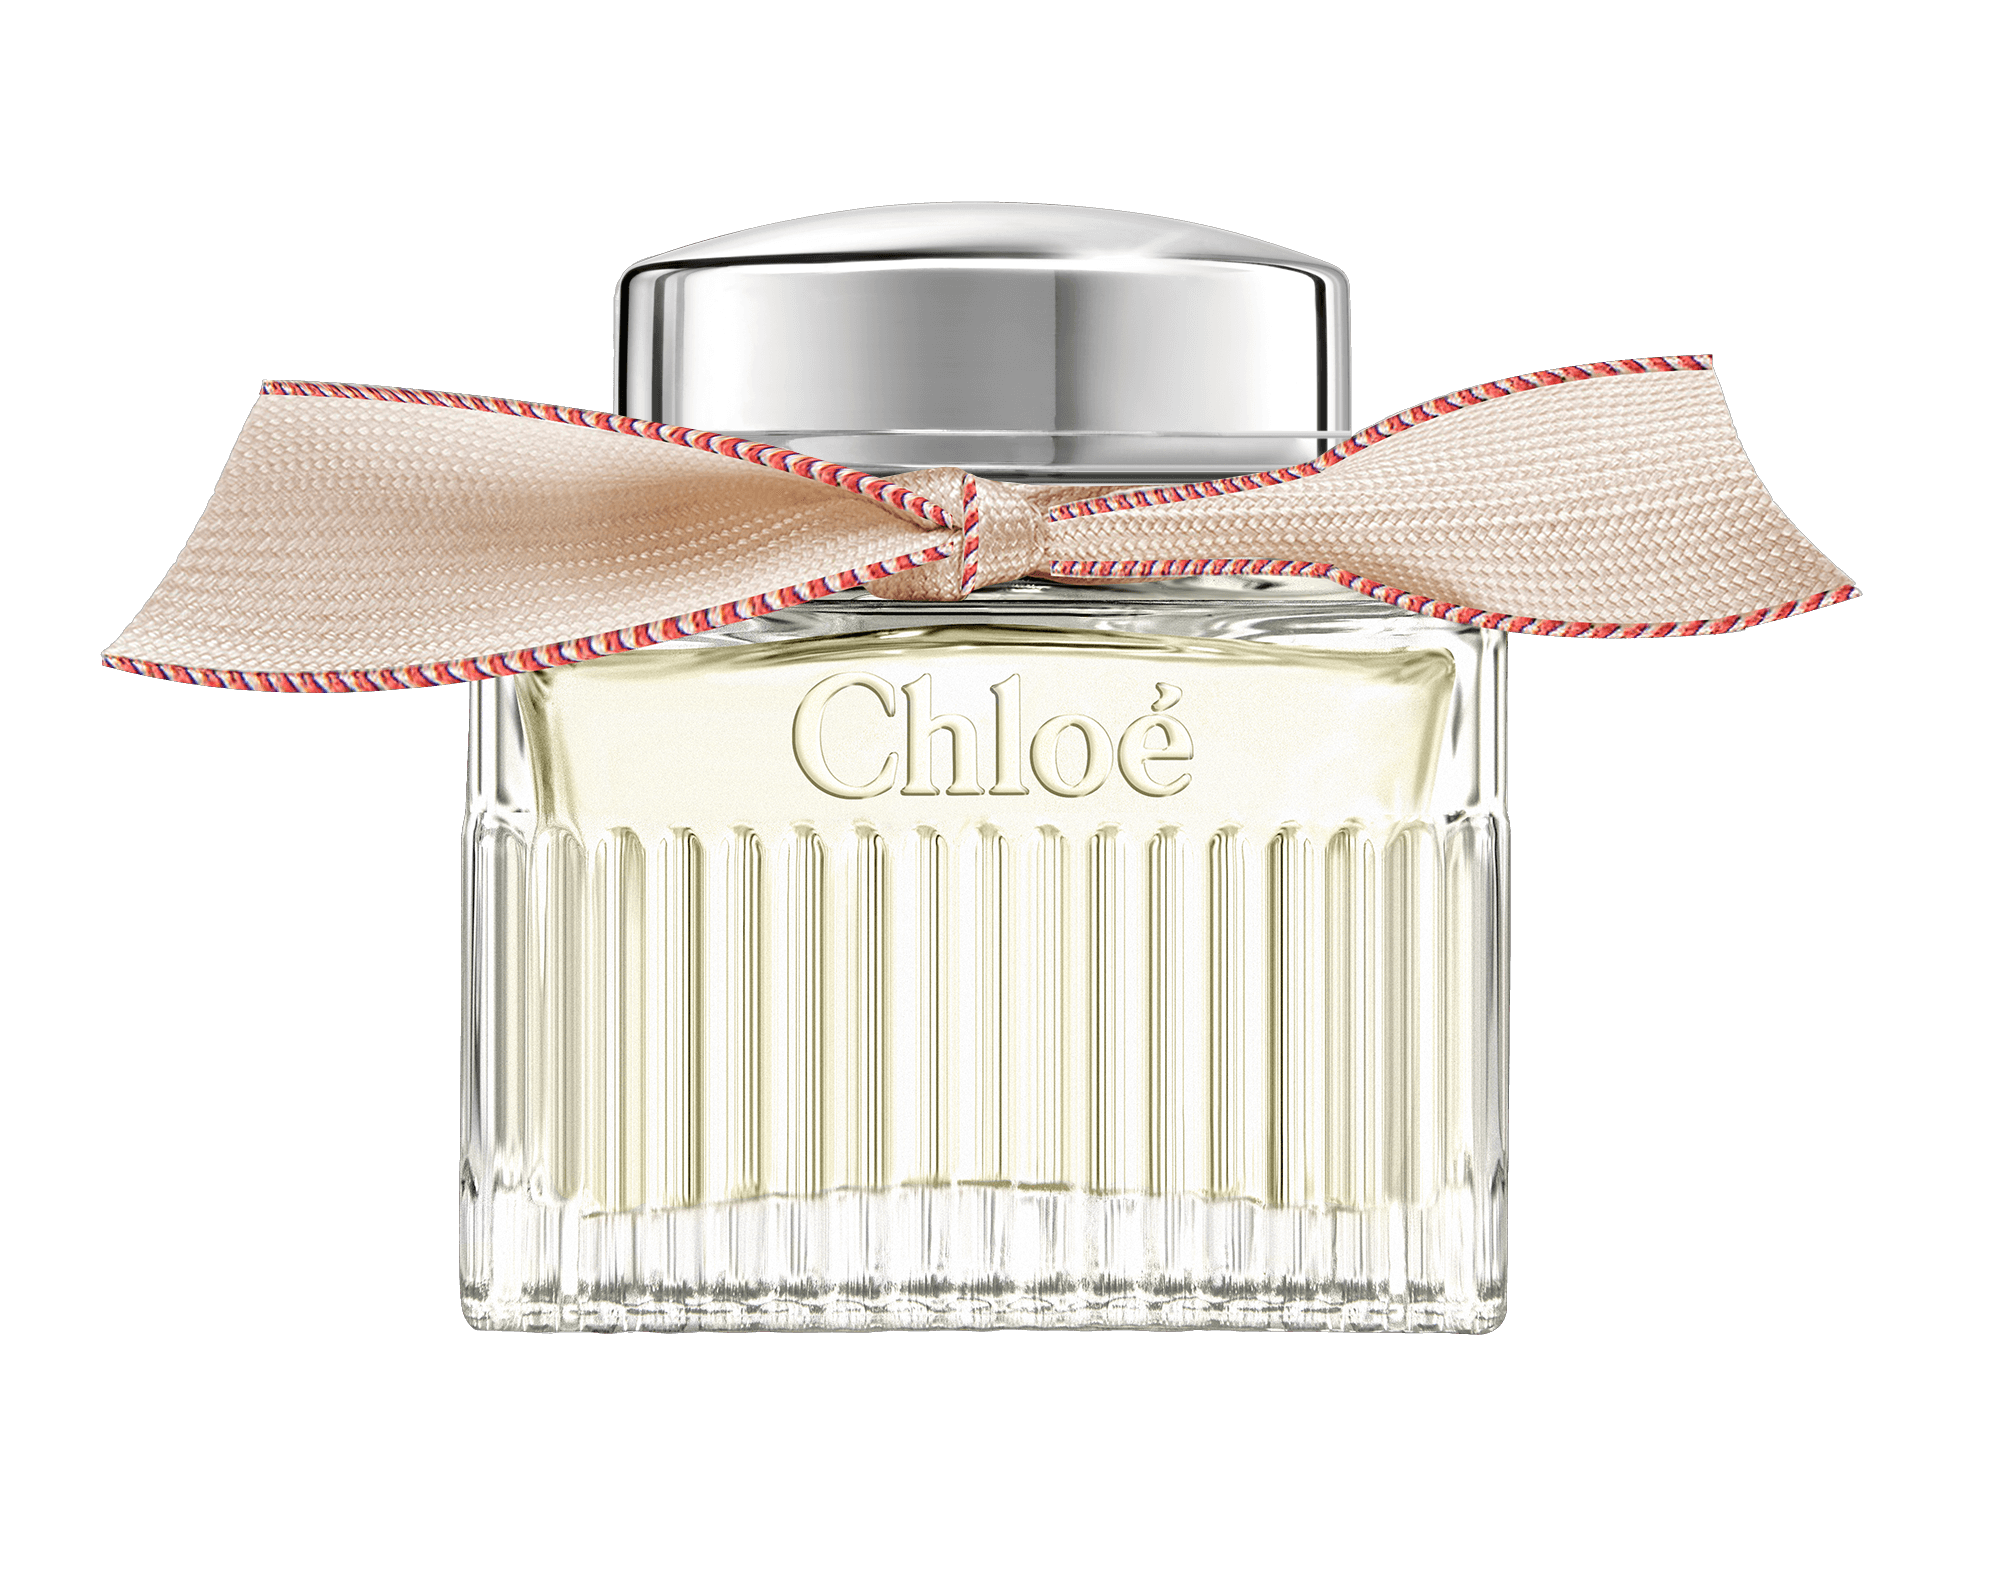 Coty reveals new Chloé Eau de Parfum Lumineuse